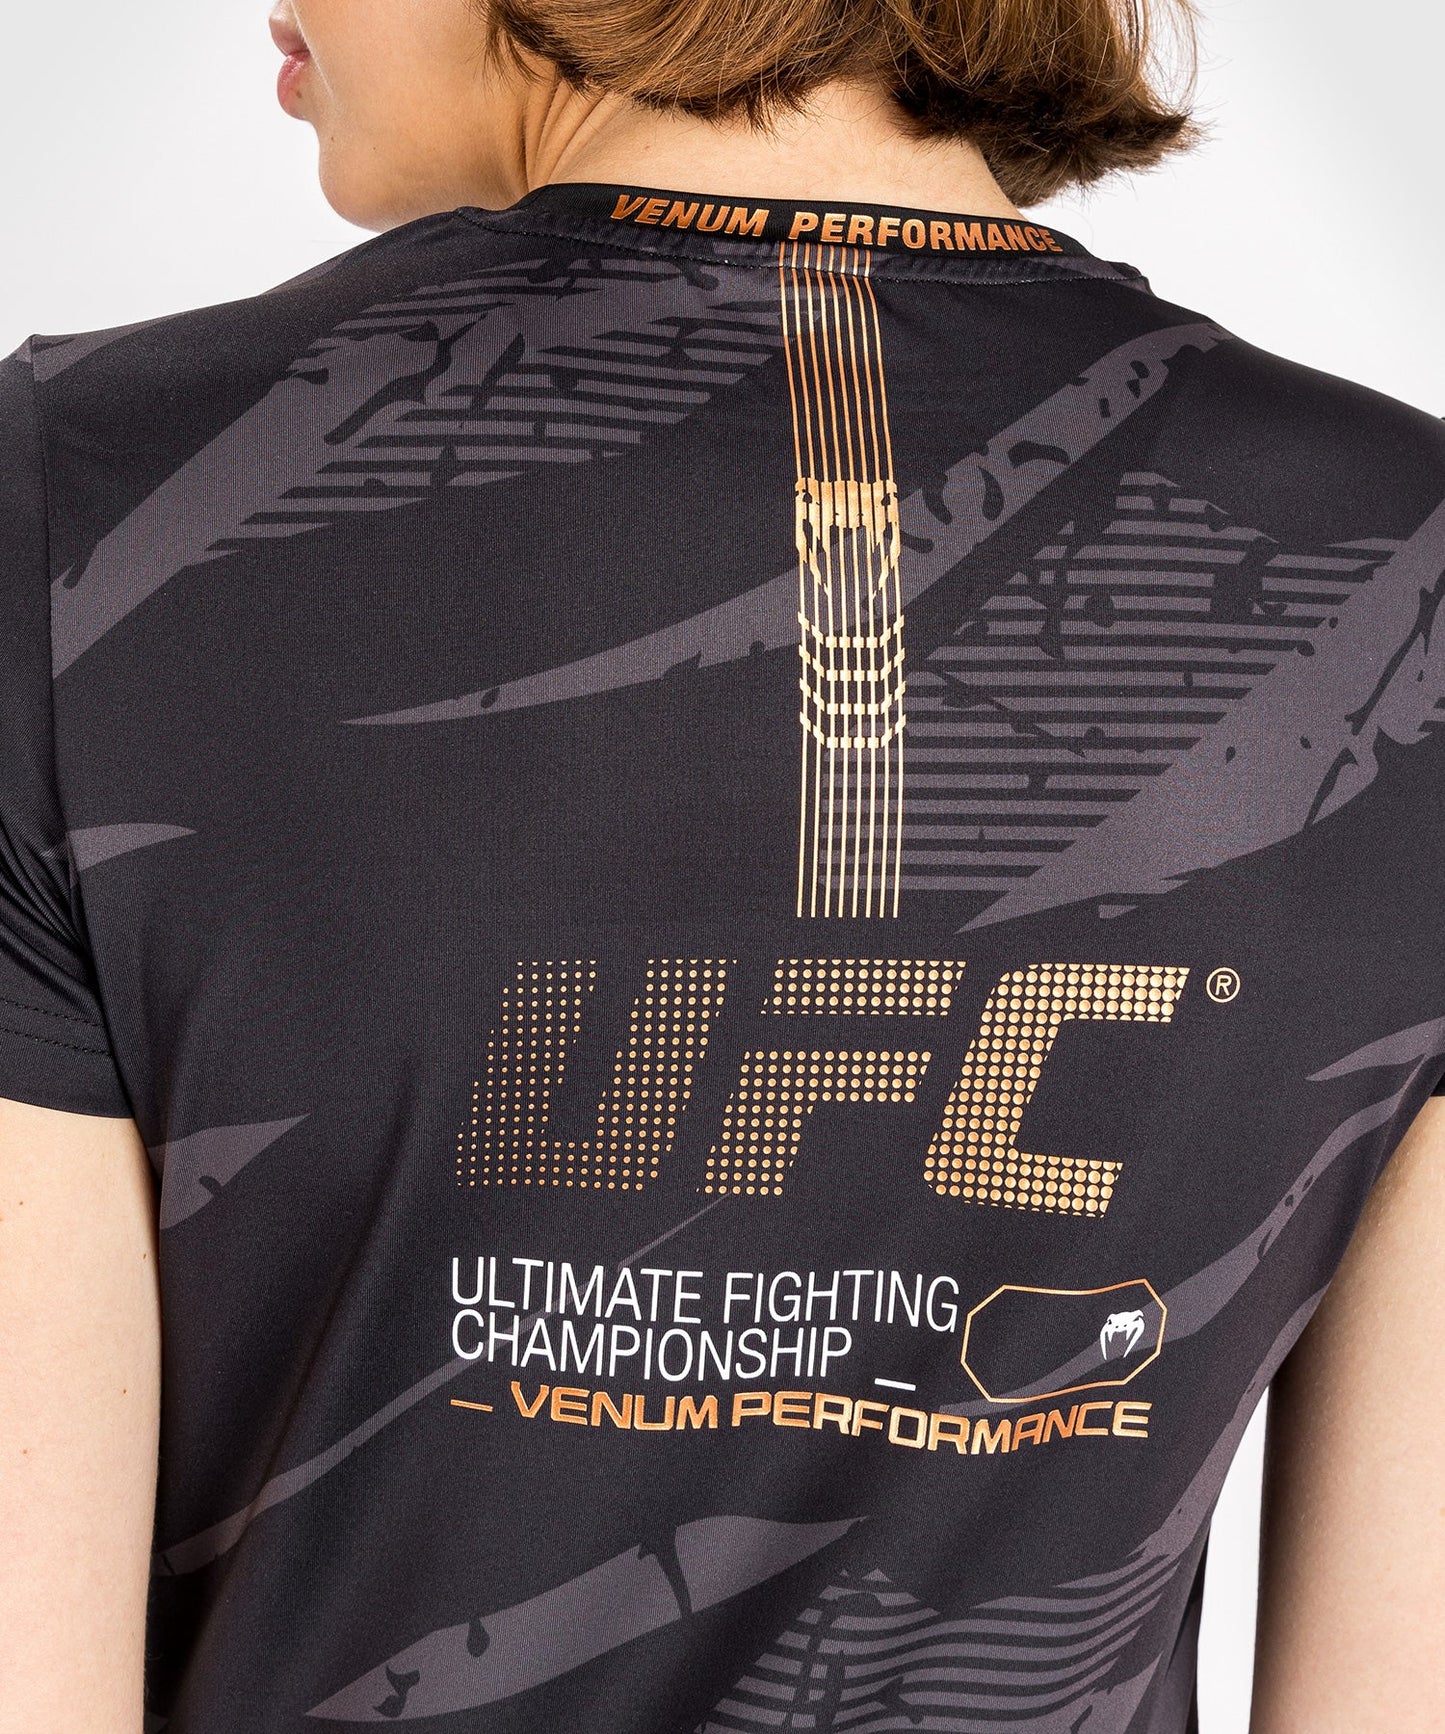 UFC Adrenaline by Venum Fight Week Women’s Dry-Tech T-shirt - Urban Camo